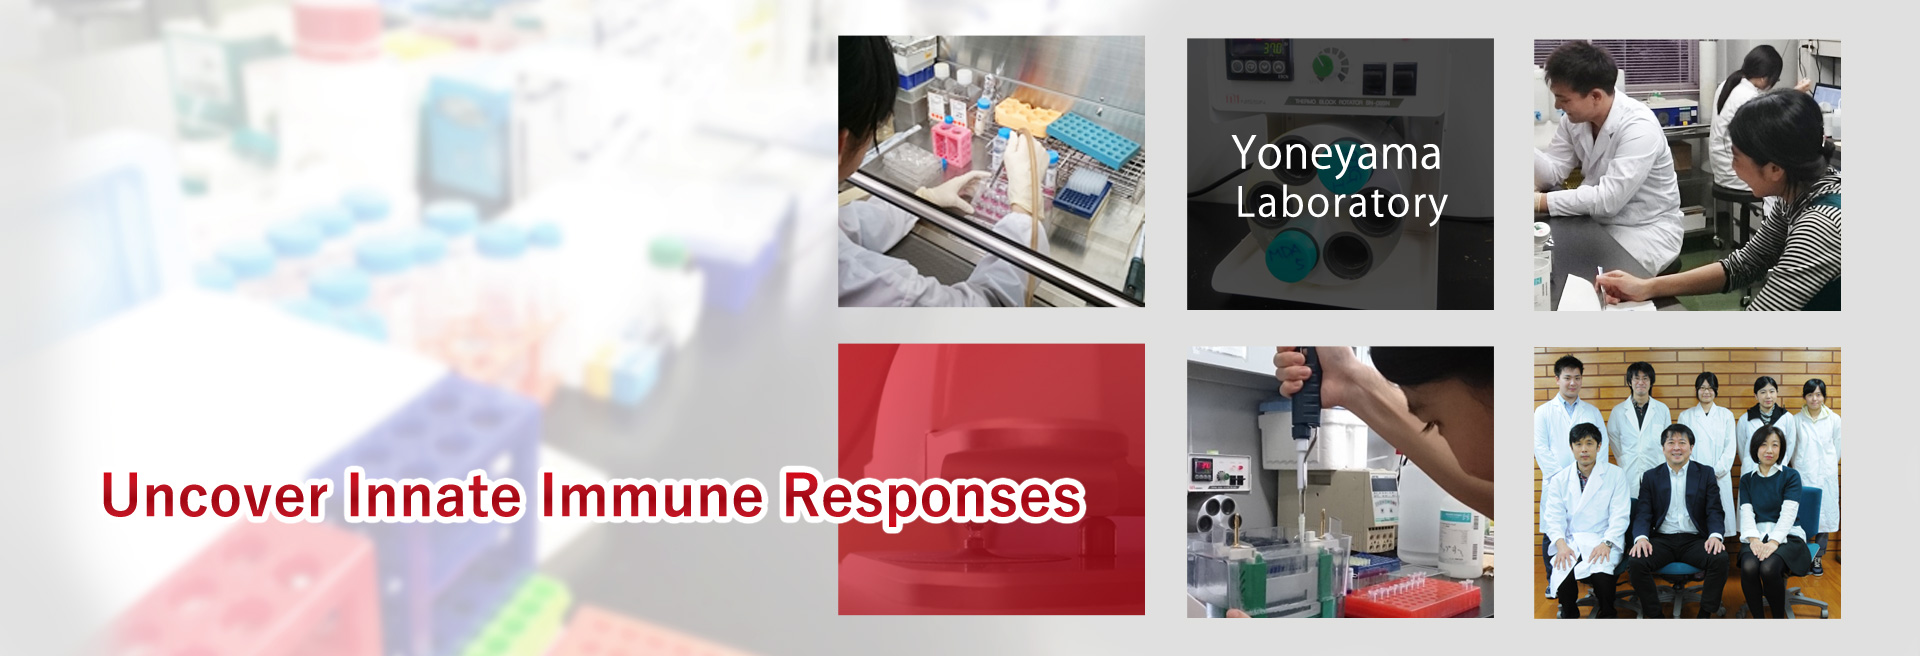 Uncover Innate Immune Responses